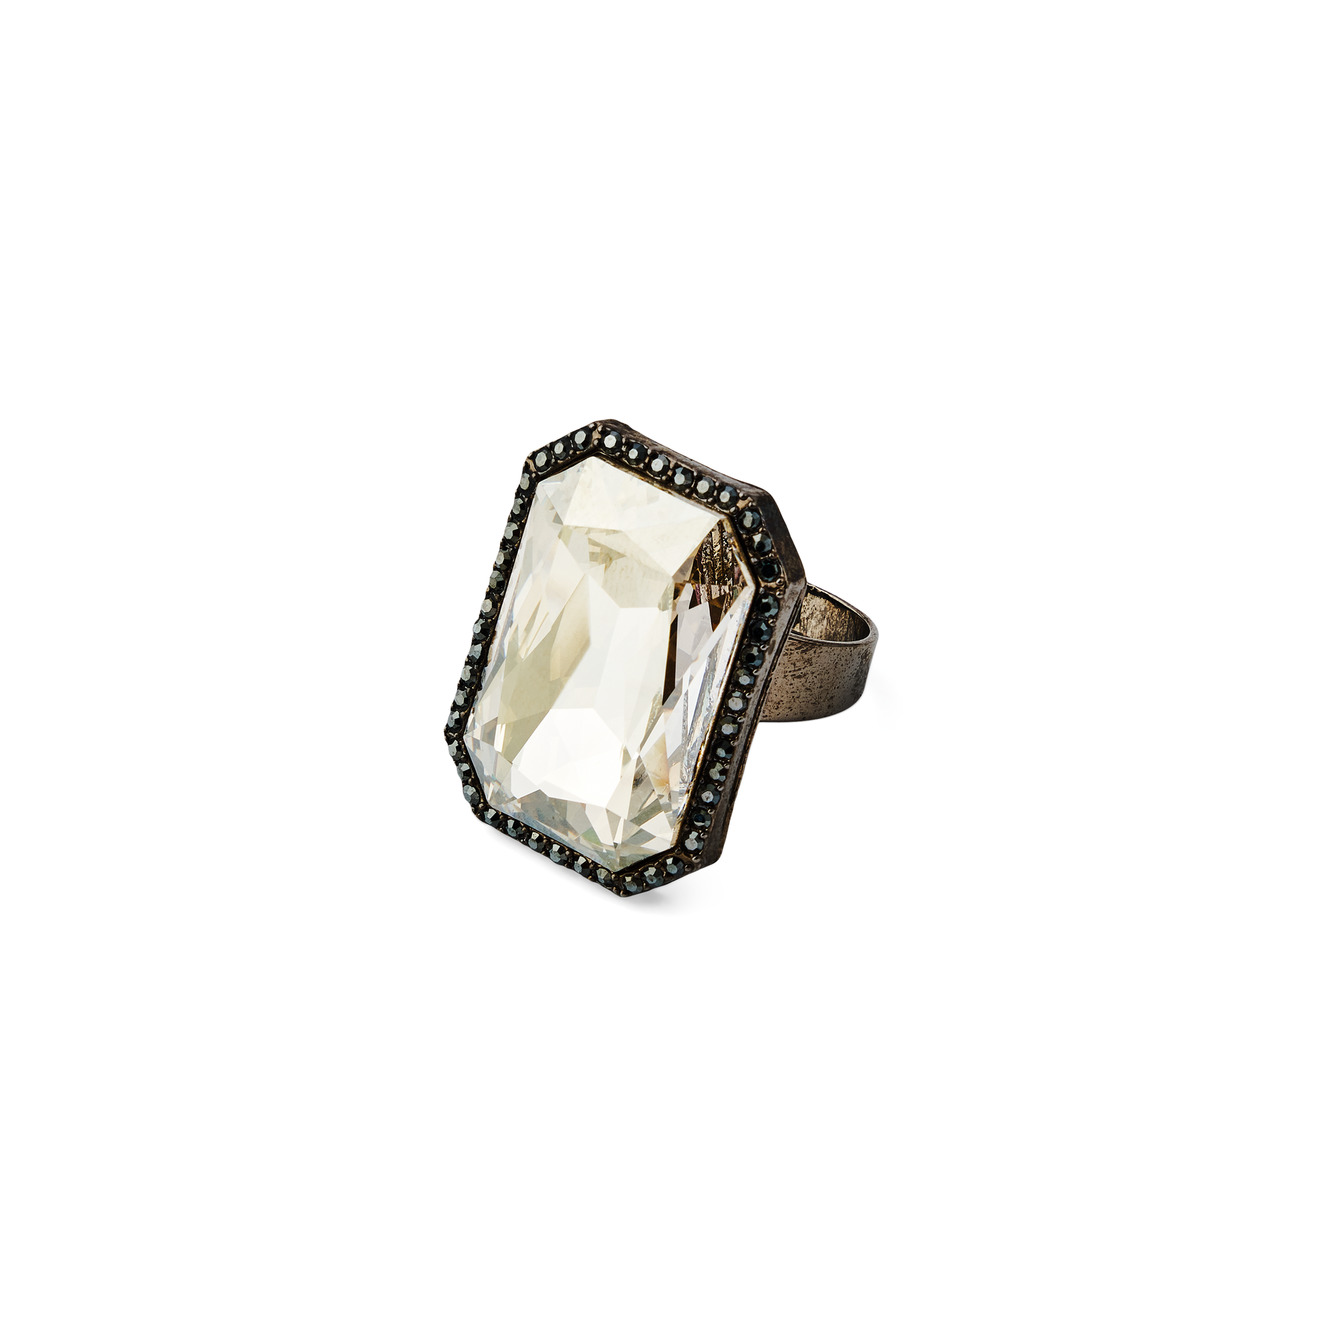 Herald Percy Кольцо с крупным коньячным кристаллом с паве из черных кристаллов herald percy золотистое кольцо с паве из черных и белых кристаллов